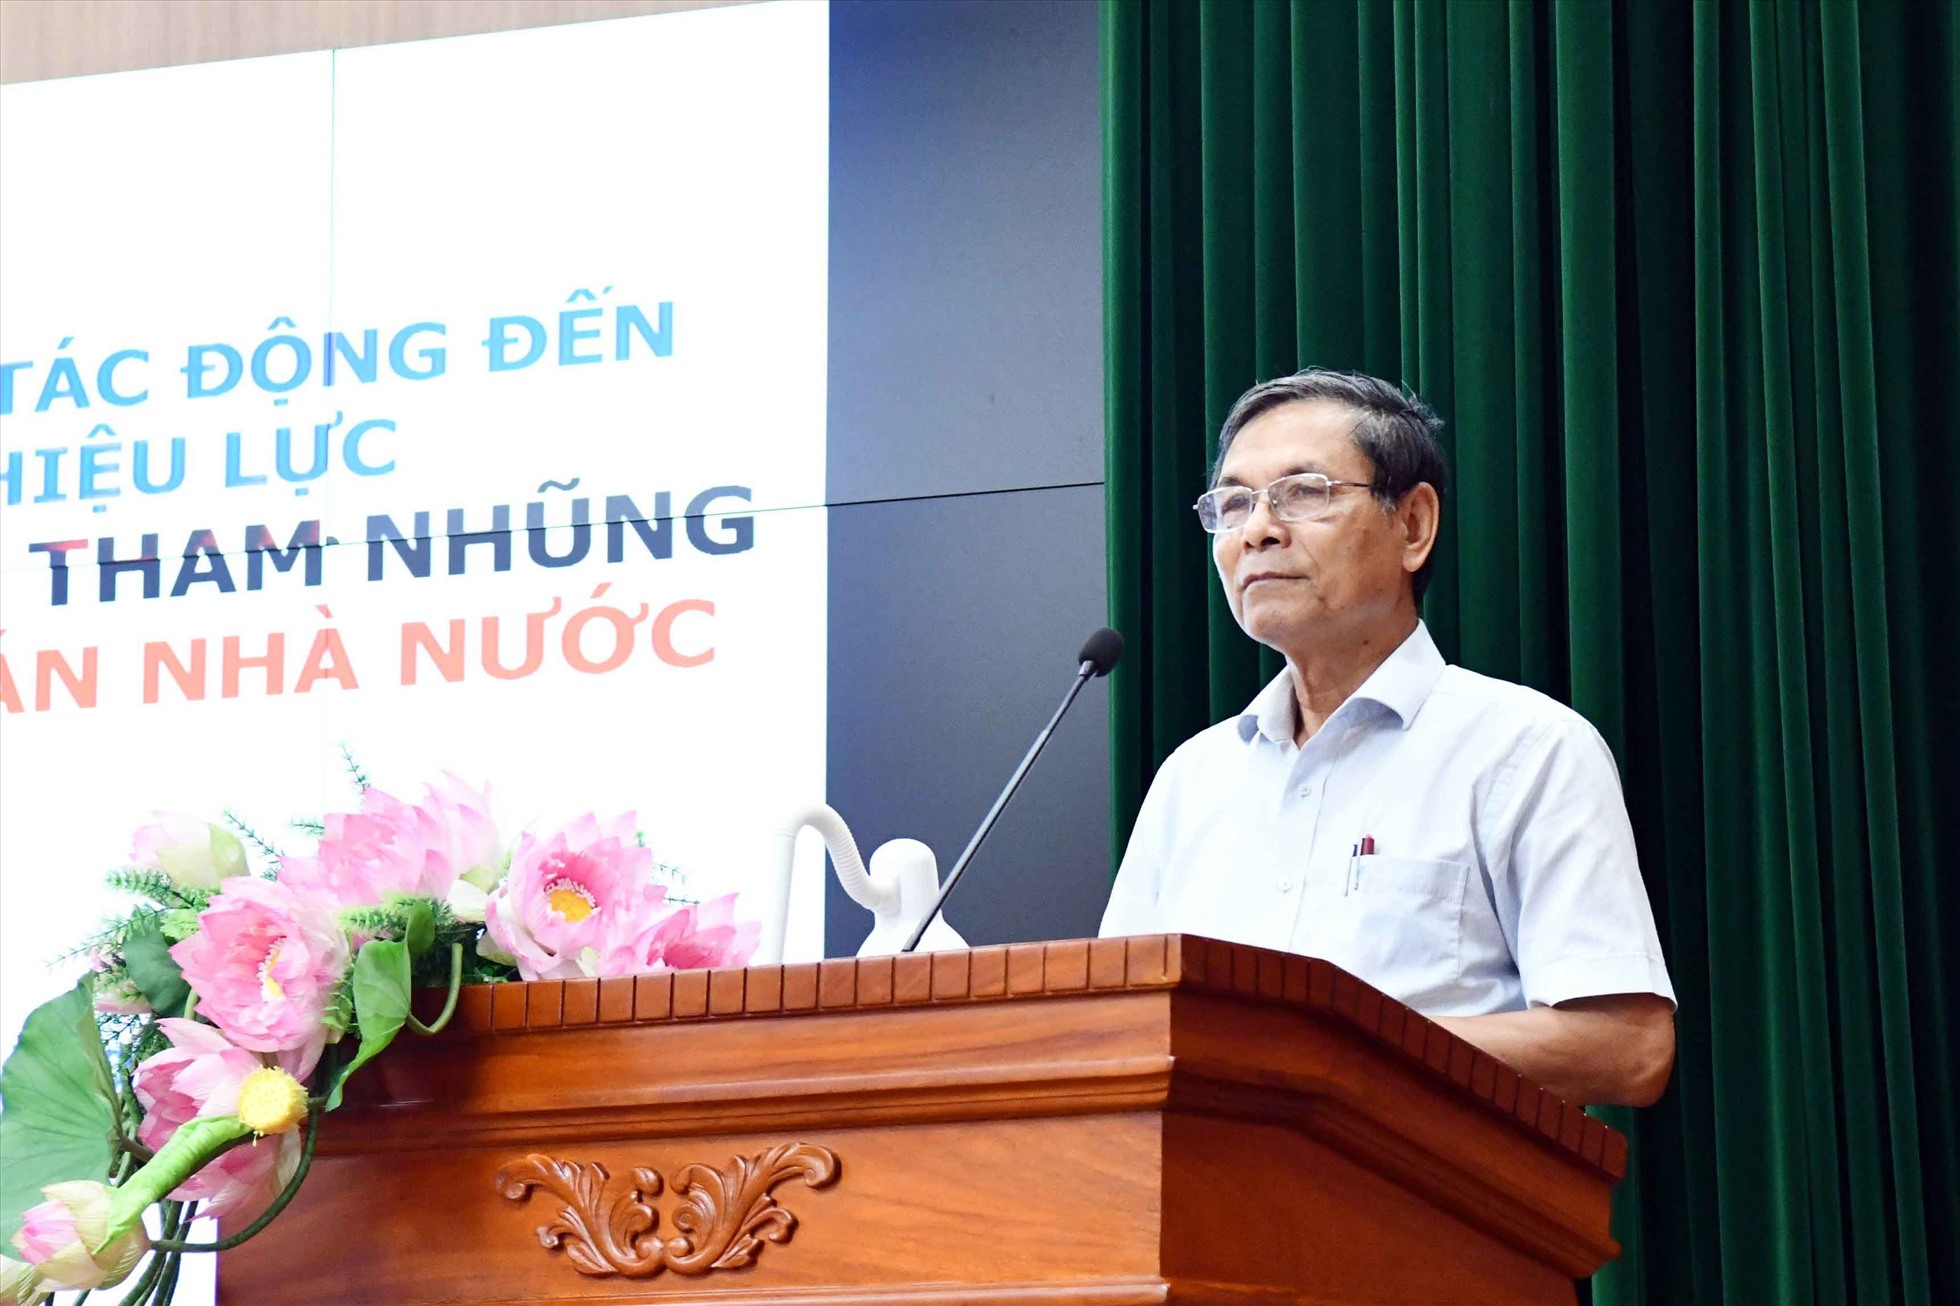 PGS. TS Đặng Văn Thanh, Chủ tịch Hiệp hội kế toán và kiểm toán Việt Nam